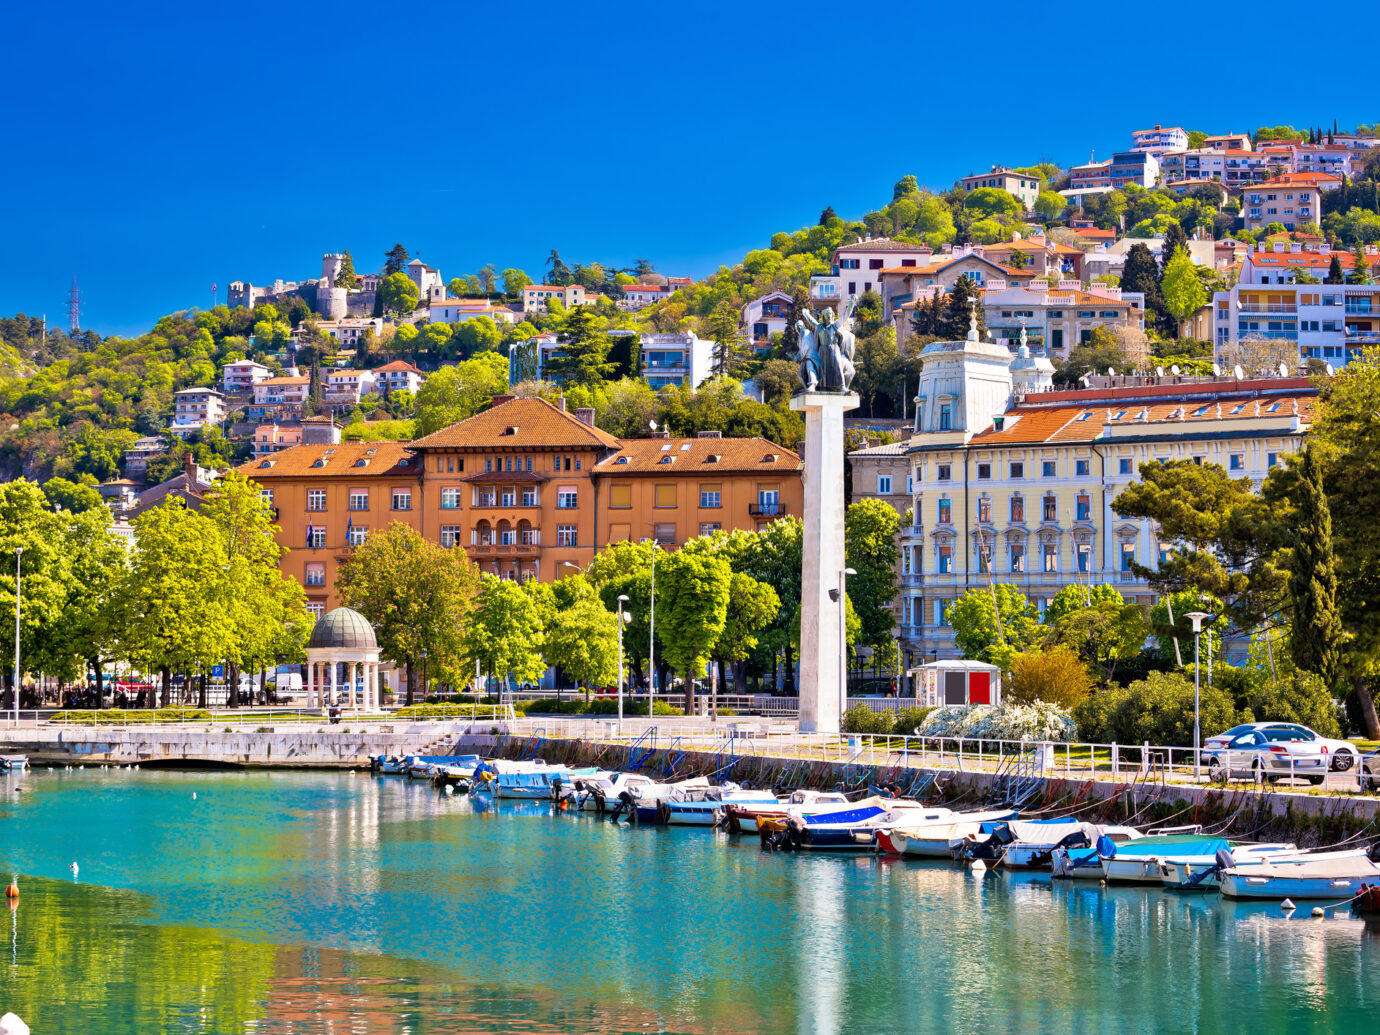 City of Rijeka Delta and trsat view, Kvarner bay, Croatia